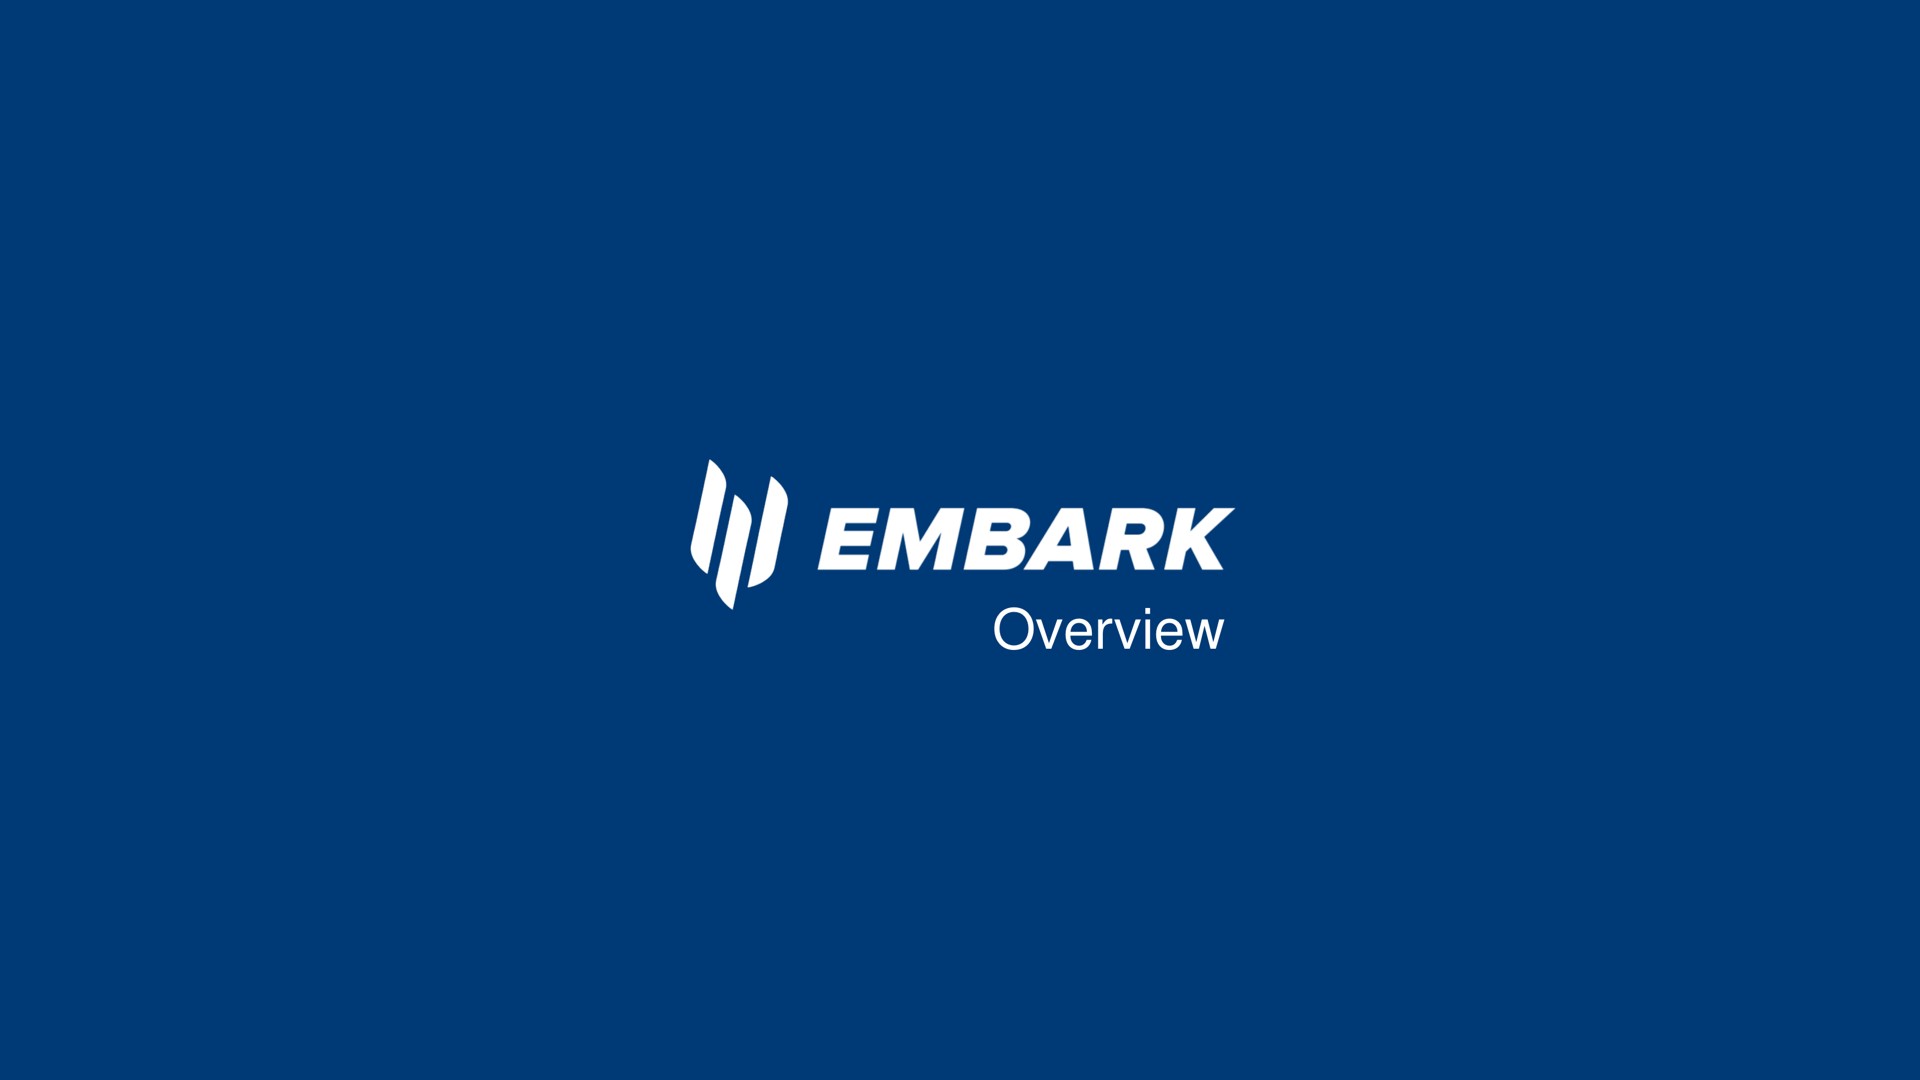 overview embark | Embark